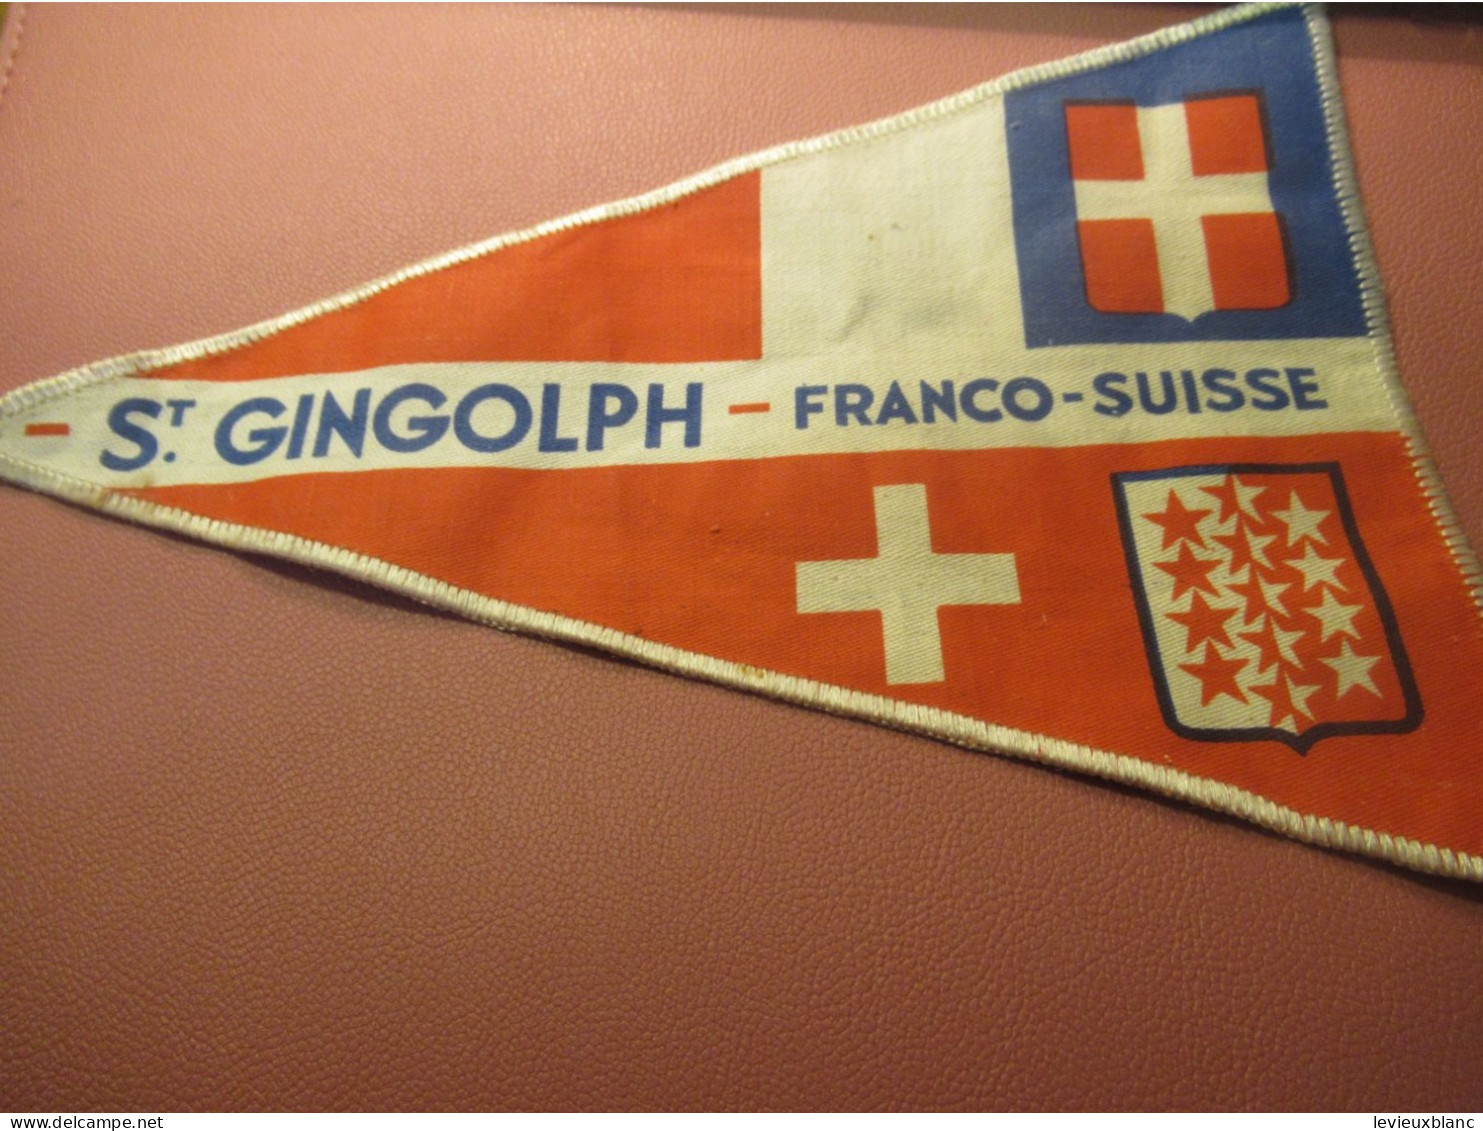 Fanion Touristique Ancien / St GINGOLPH - Franco-Suisse /Vers 1950                 DFA69 - Flags